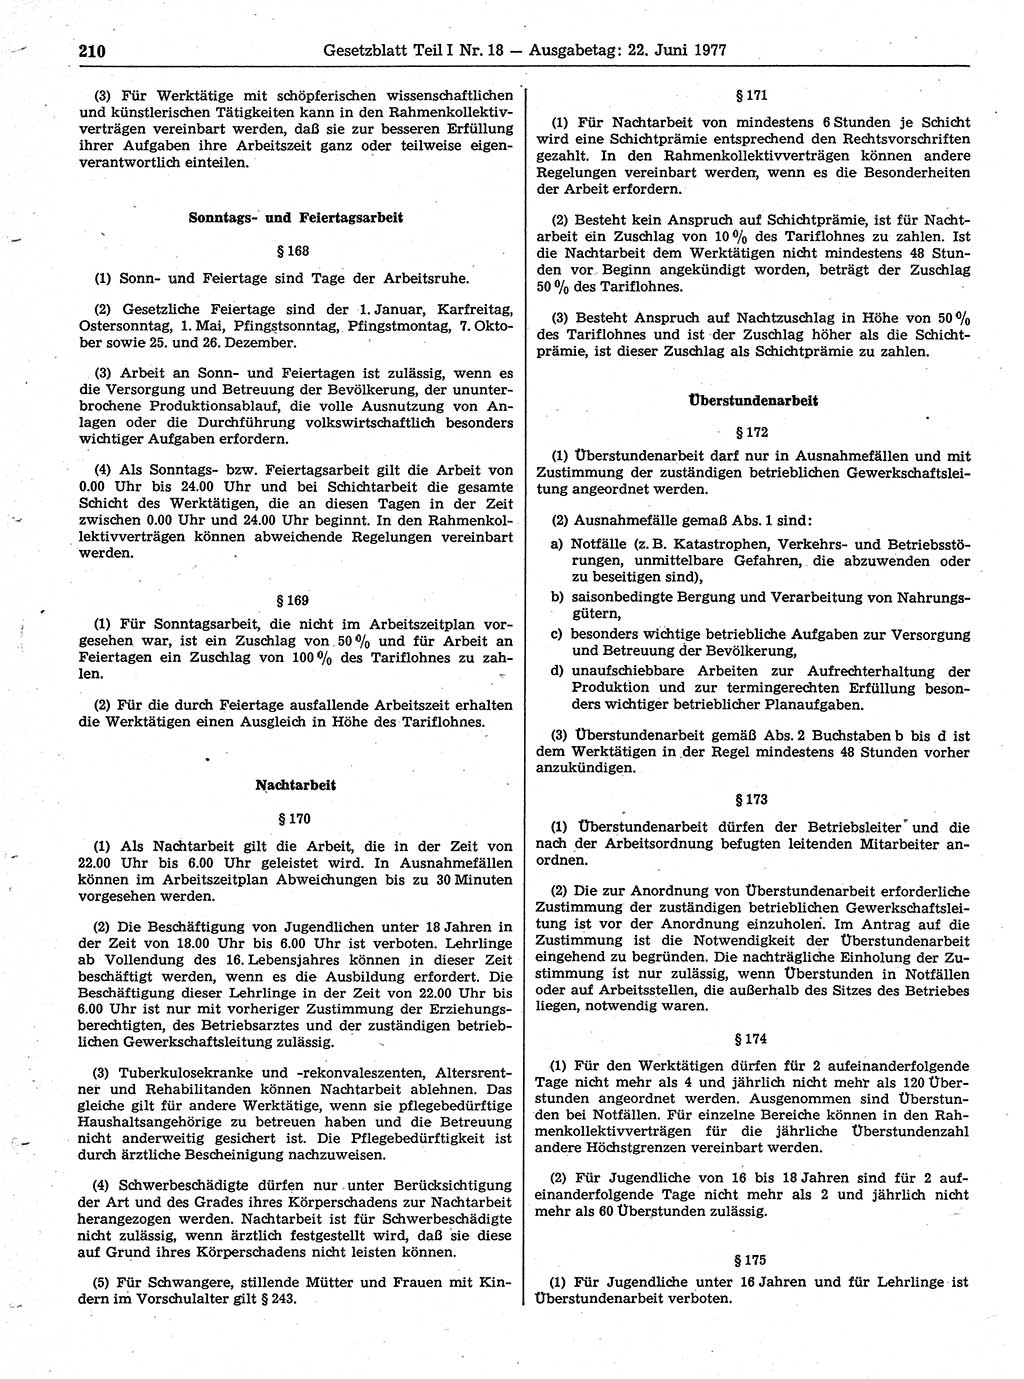 Gesetzblatt (GBl.) der Deutschen Demokratischen Republik (DDR) Teil Ⅰ 1977, Seite 210 (GBl. DDR Ⅰ 1977, S. 210)